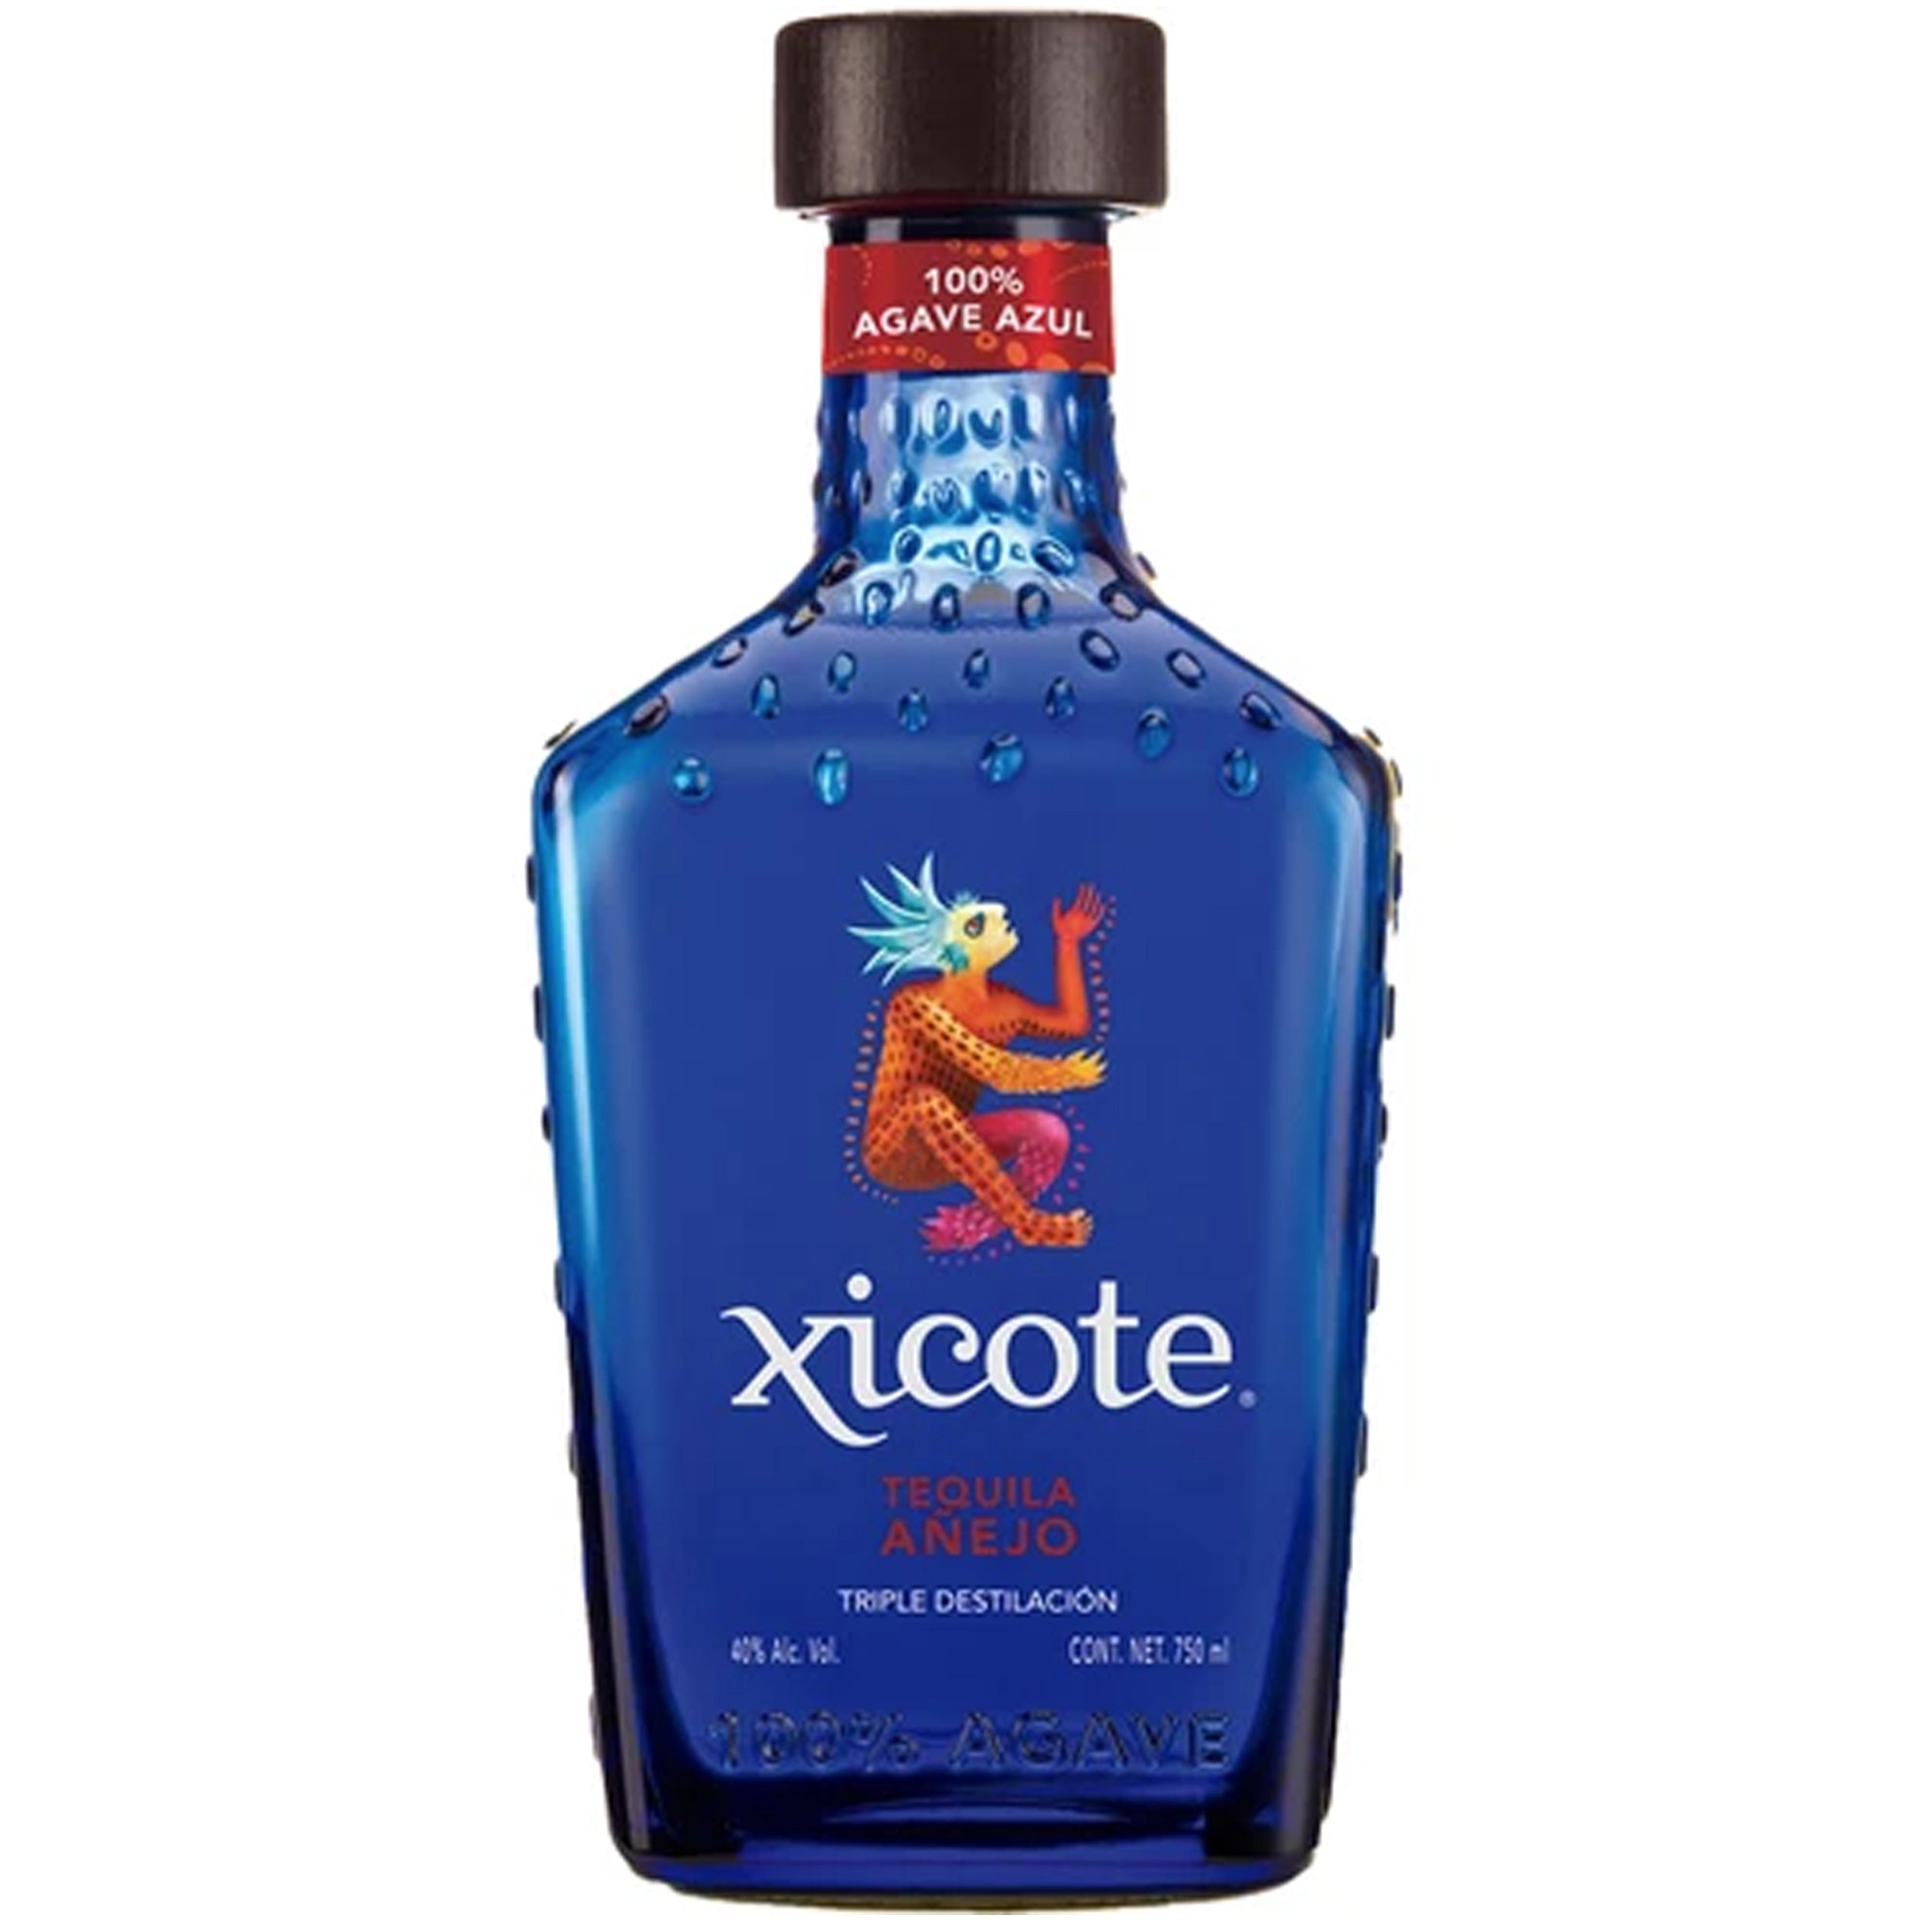 Xicote Anejo Tequila